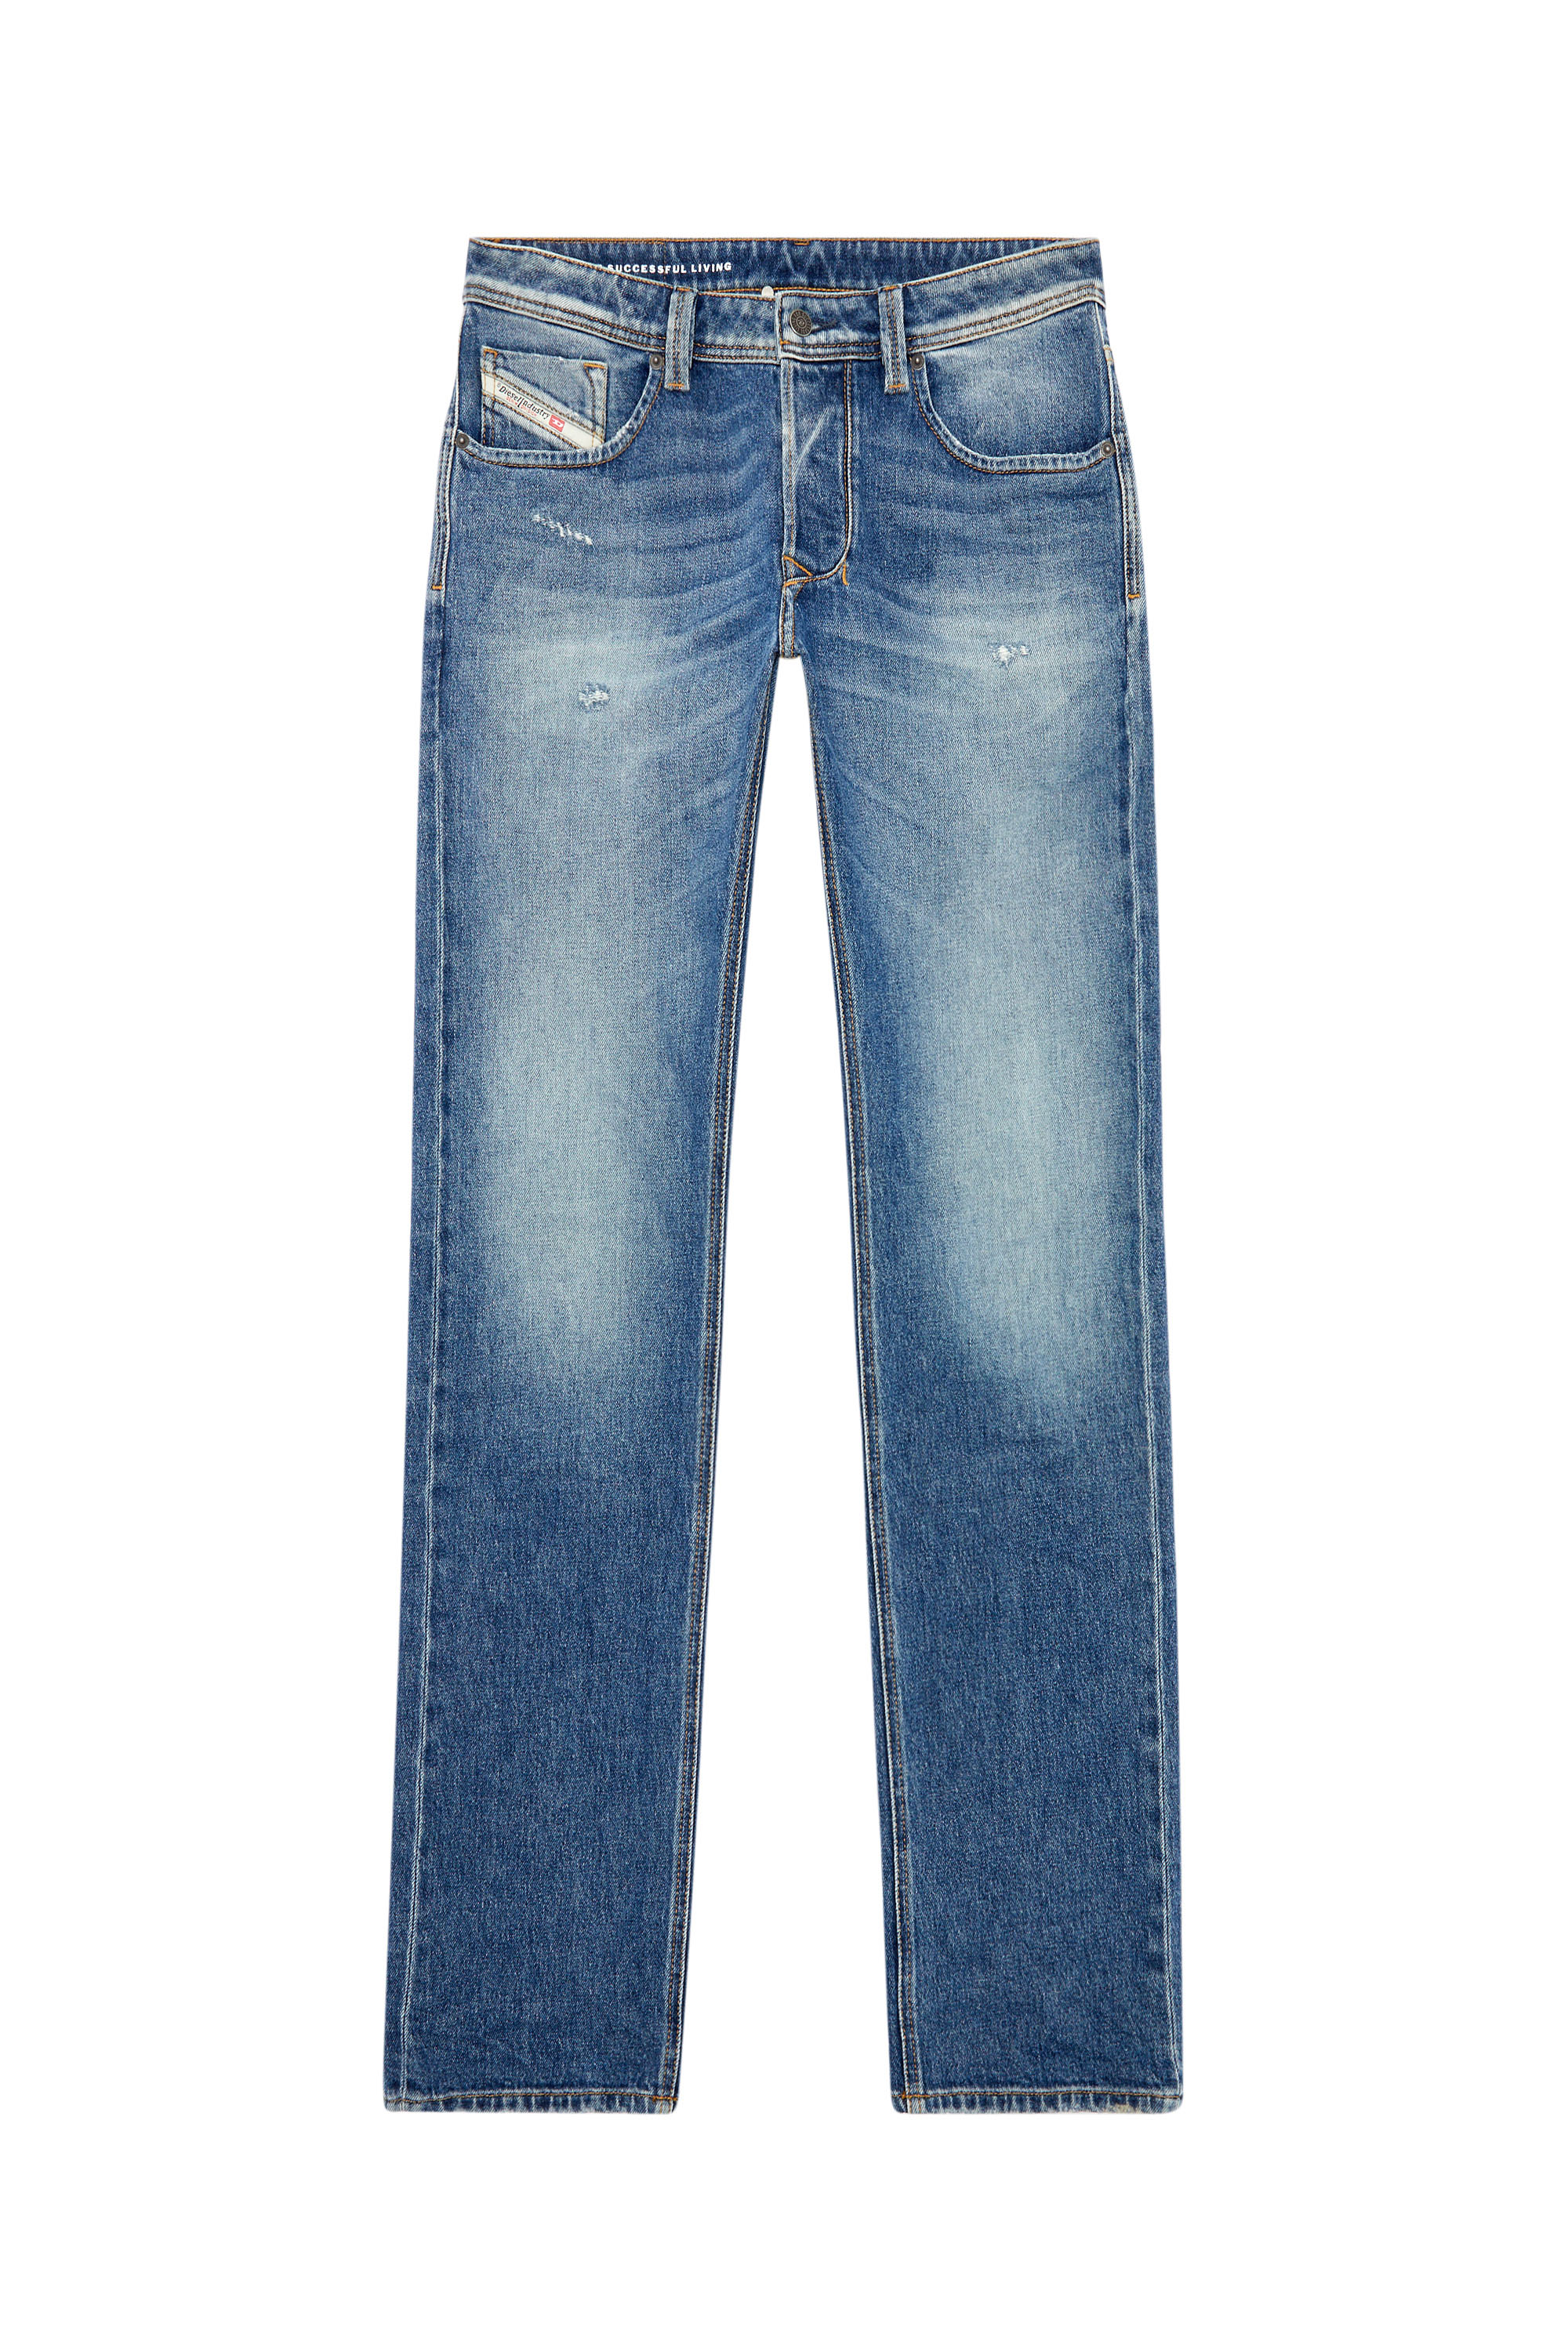 Diesel - Man Straight Jeans 1985 Larkee 09I16, Medium blue - Image 5